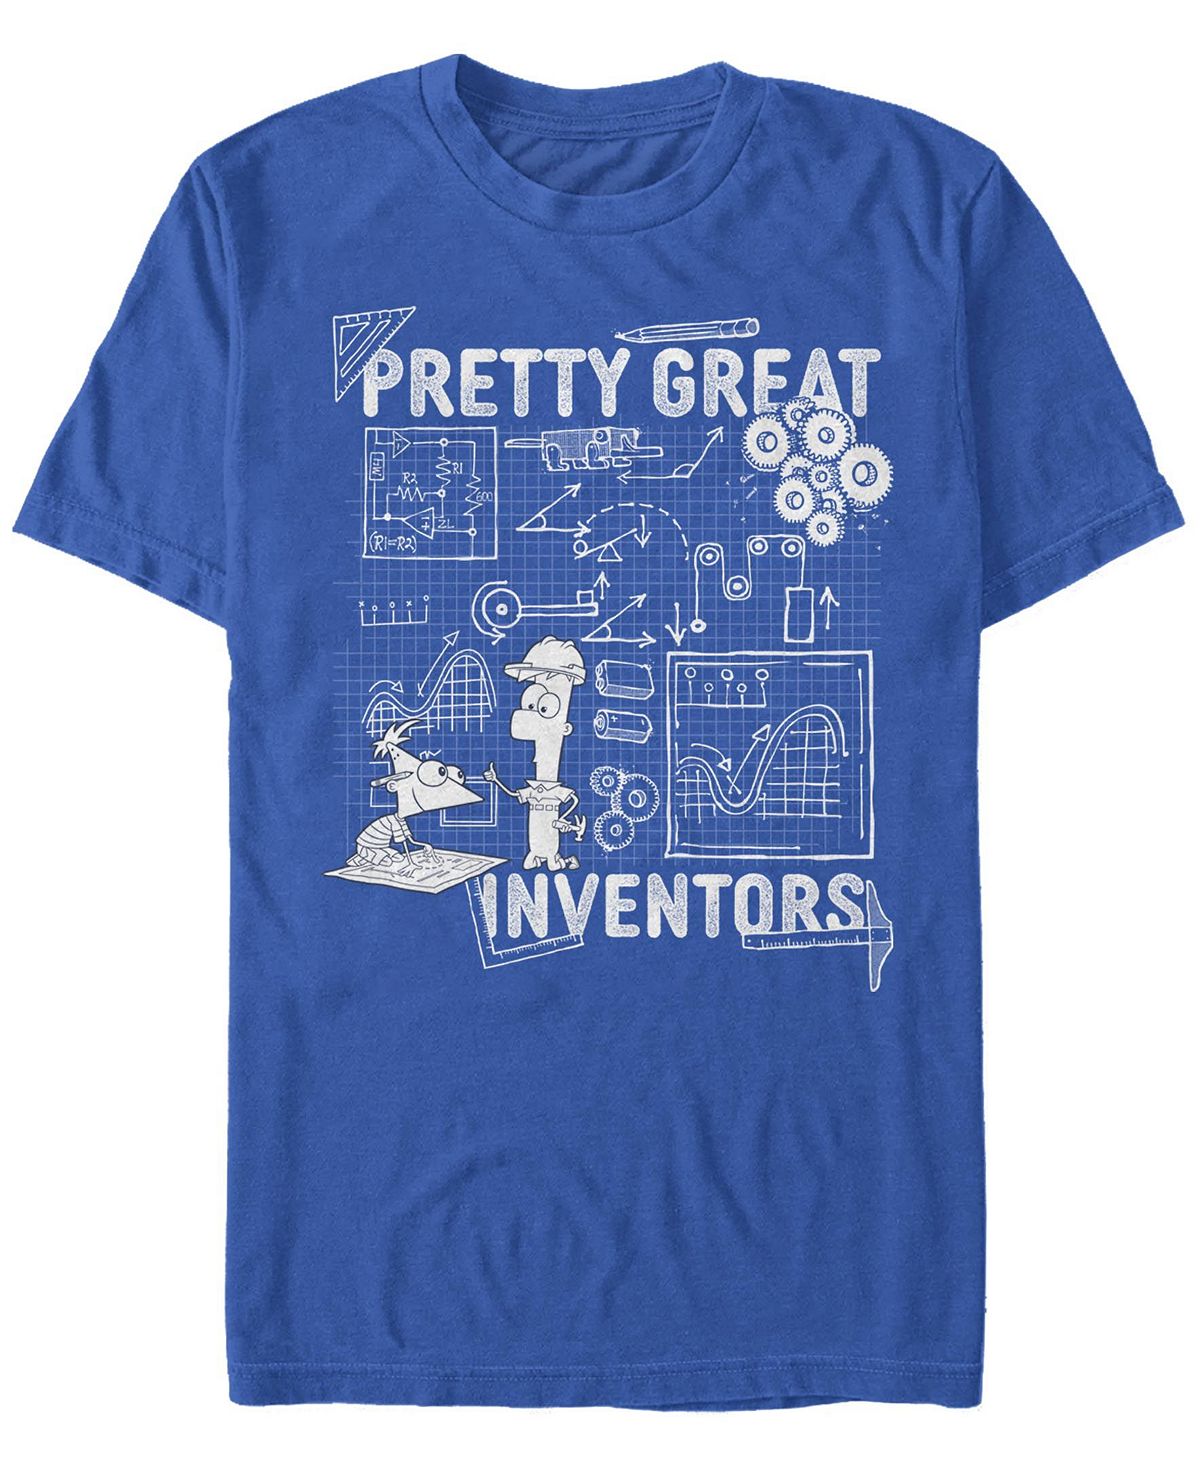 Мужская футболка с круглым вырезом с короткими рукавами great inventors Fifth Sun